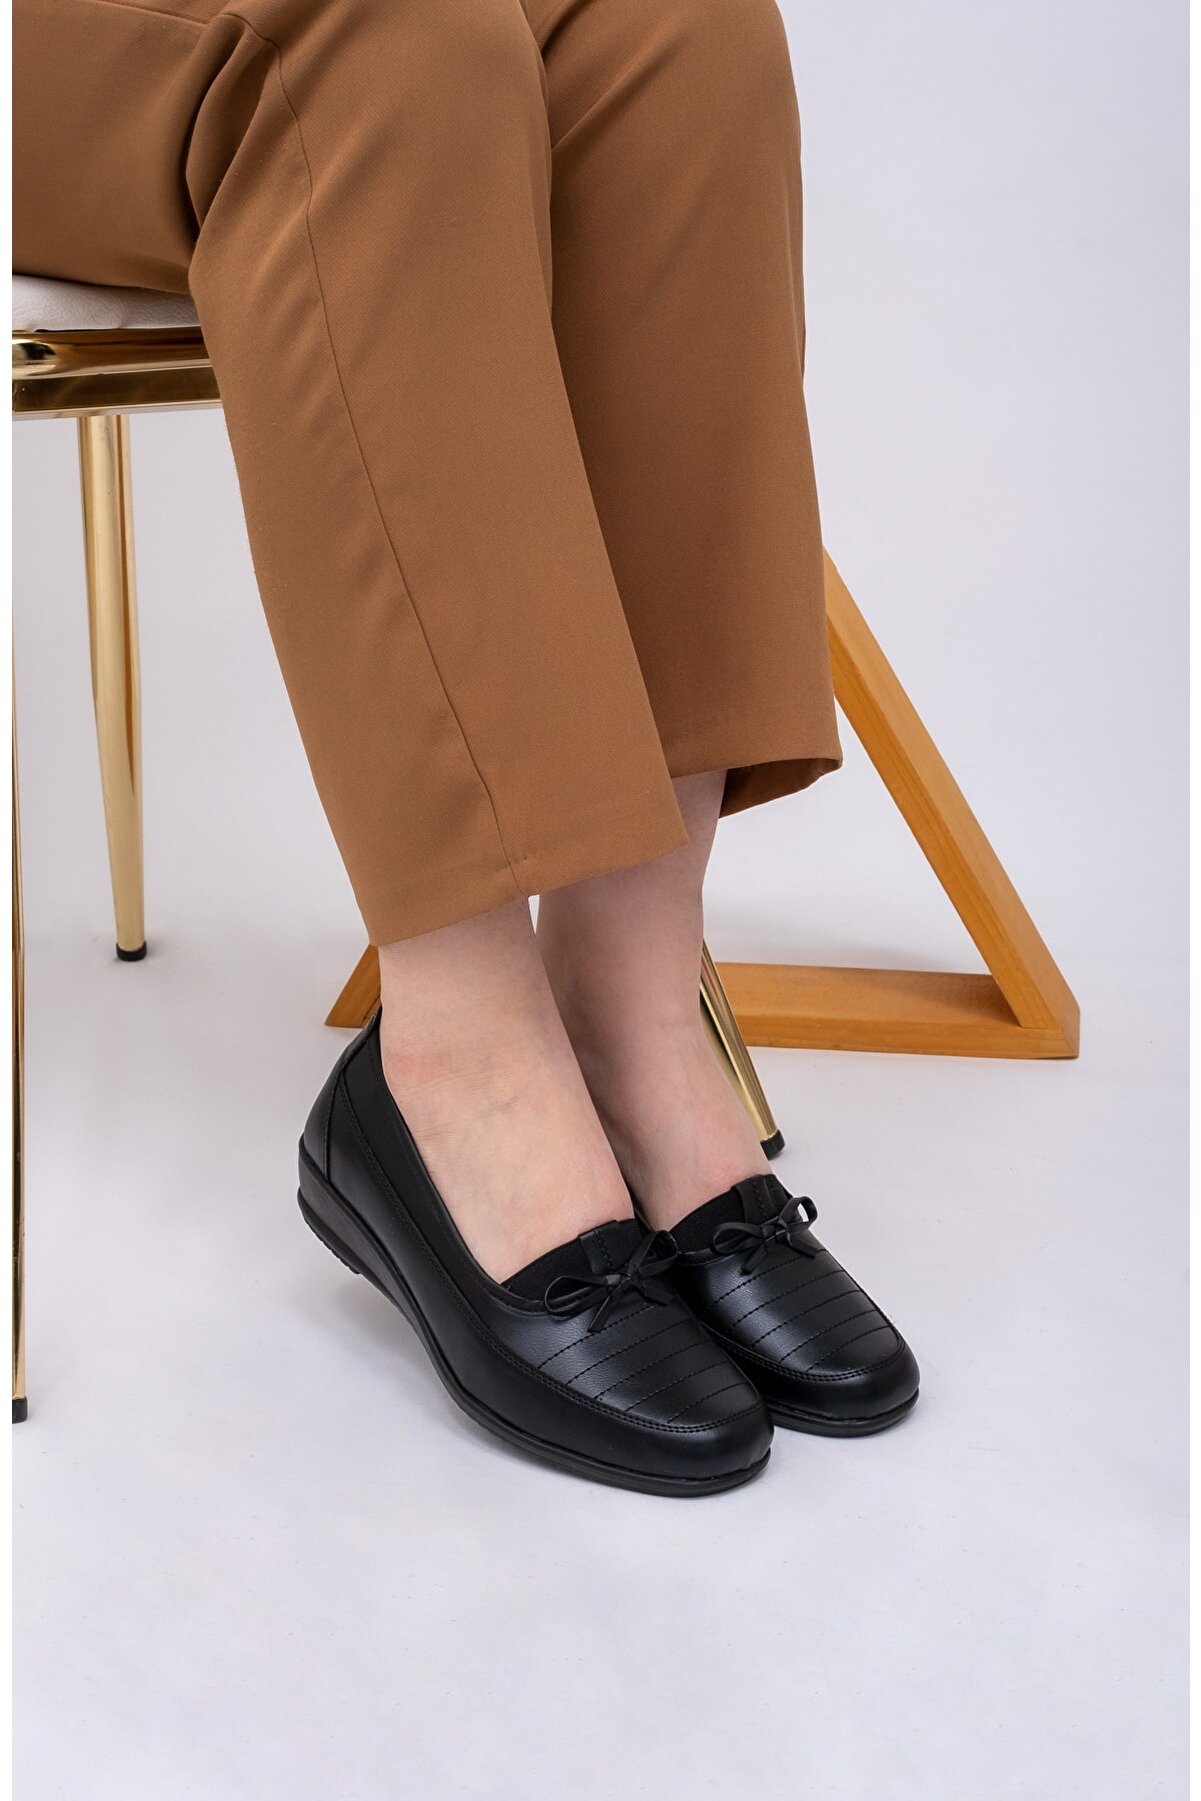 THE FRİDA SHOES Fiyonklu Içi Deri Yüksek Topuk Günlük Kullanıma Uygun Anne Kadın Ayakkabı Frd08